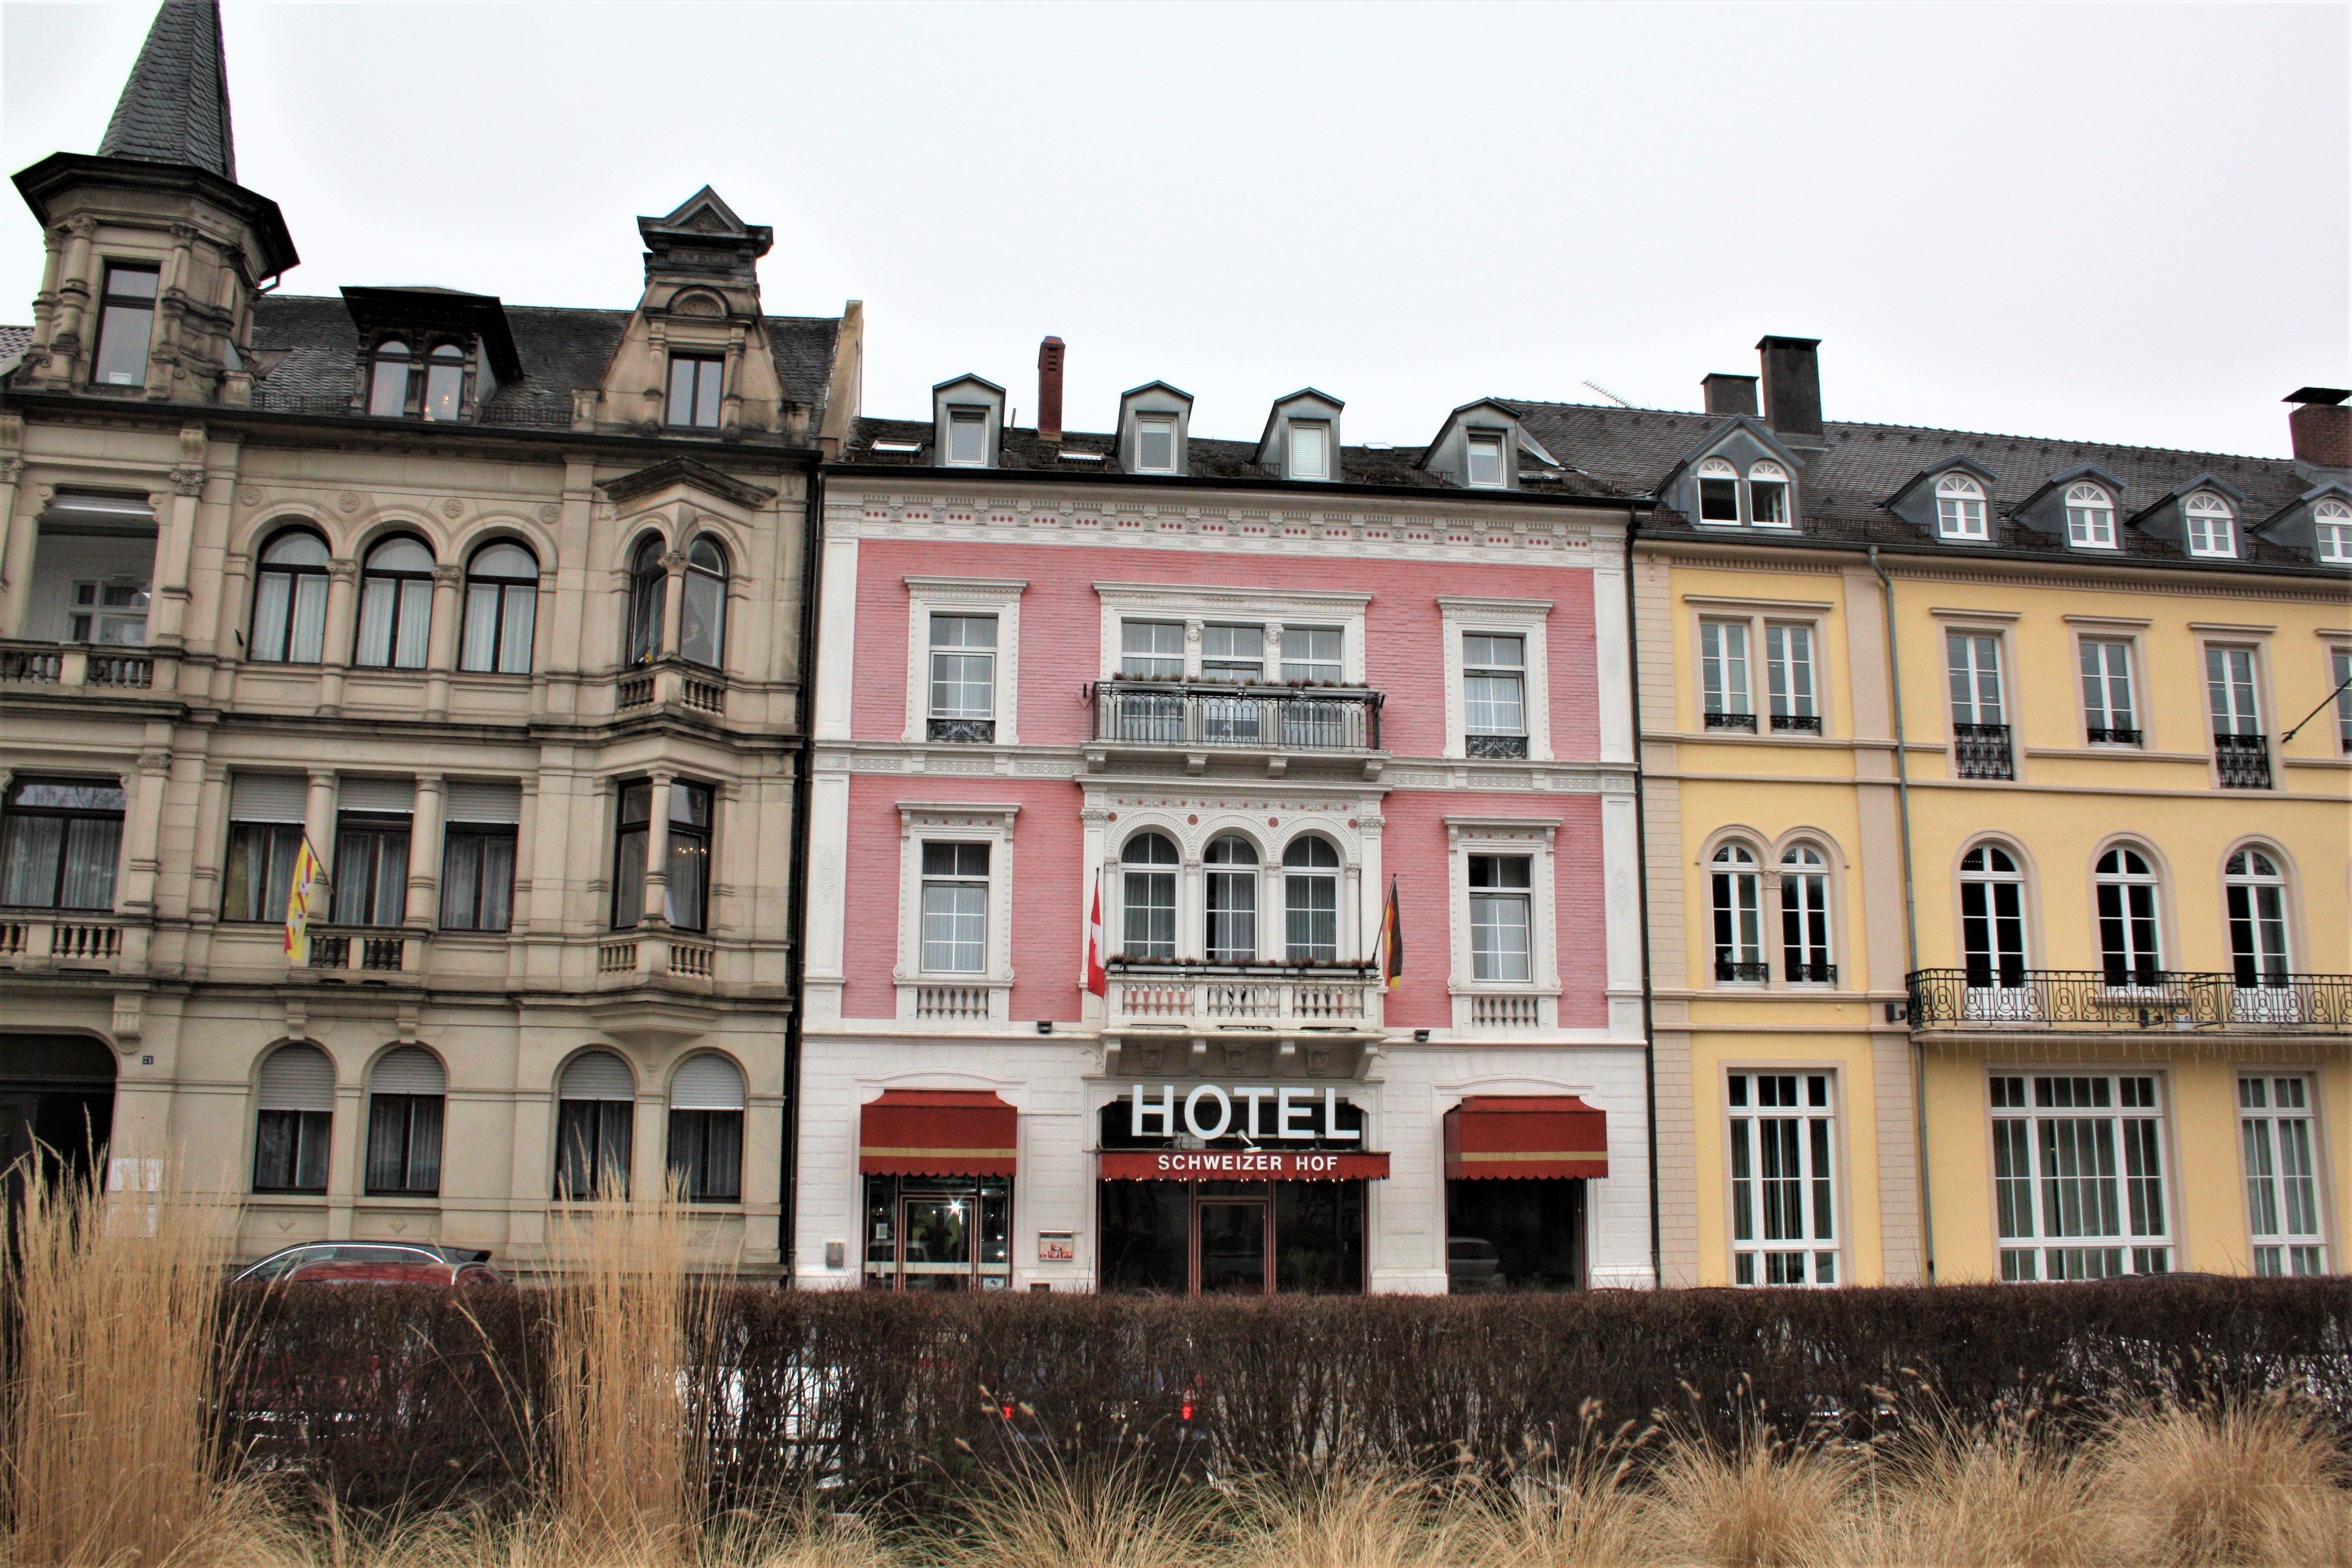 Hotel Schweizer Hof, Baden-Baden.
